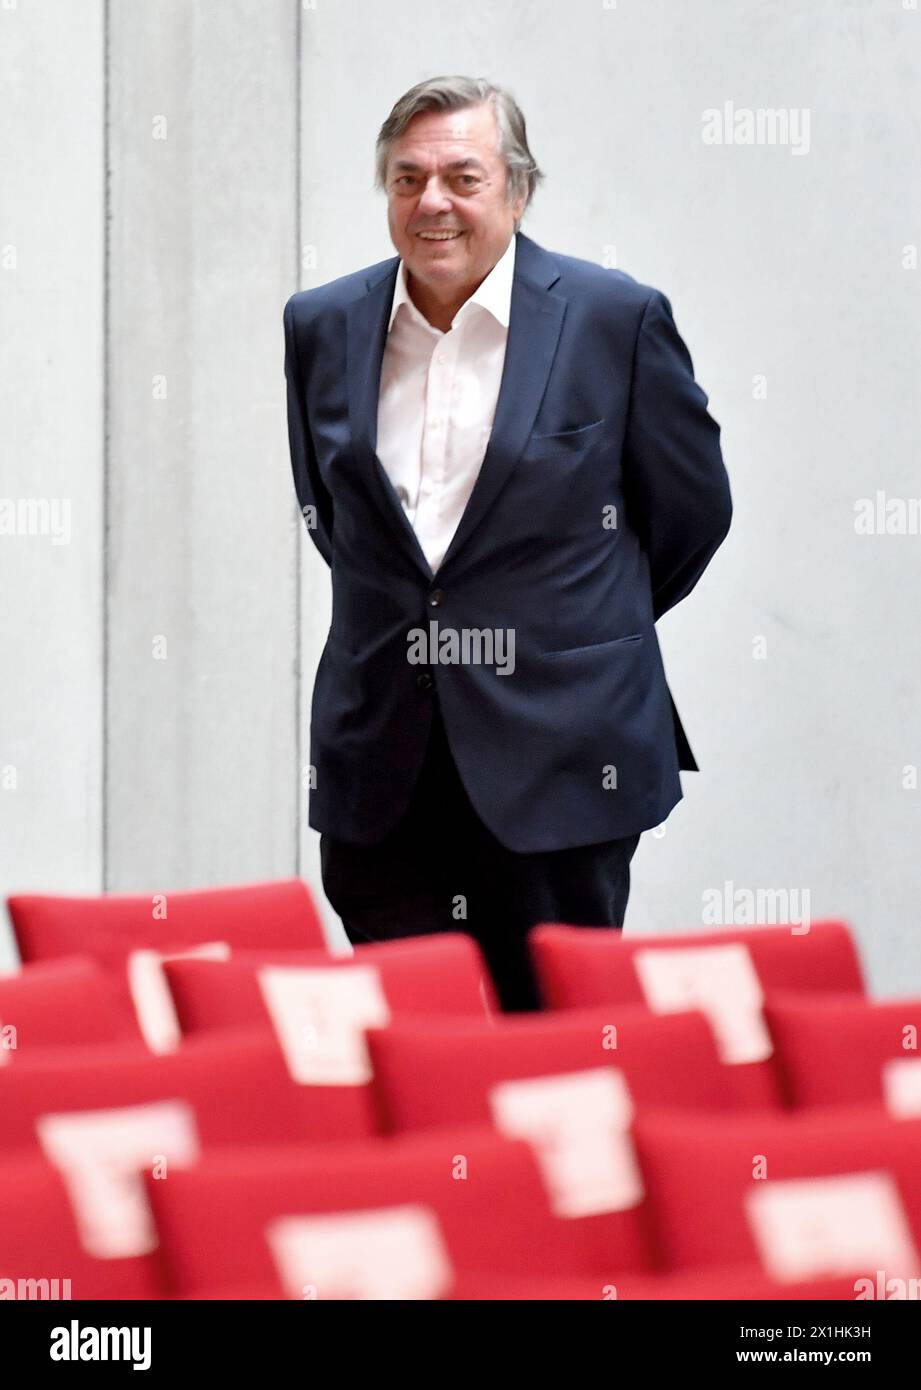 L'autore sloveno Drago Jancar sorride durante la cerimonia di premiazione del "Premio di Stato austriaco per la letteratura europea" tenutasi il 3 agosto 2020 a Salisburgo. - 20200803 PD1926 - Rechteinfo: Diritti gestiti (RM) Foto Stock